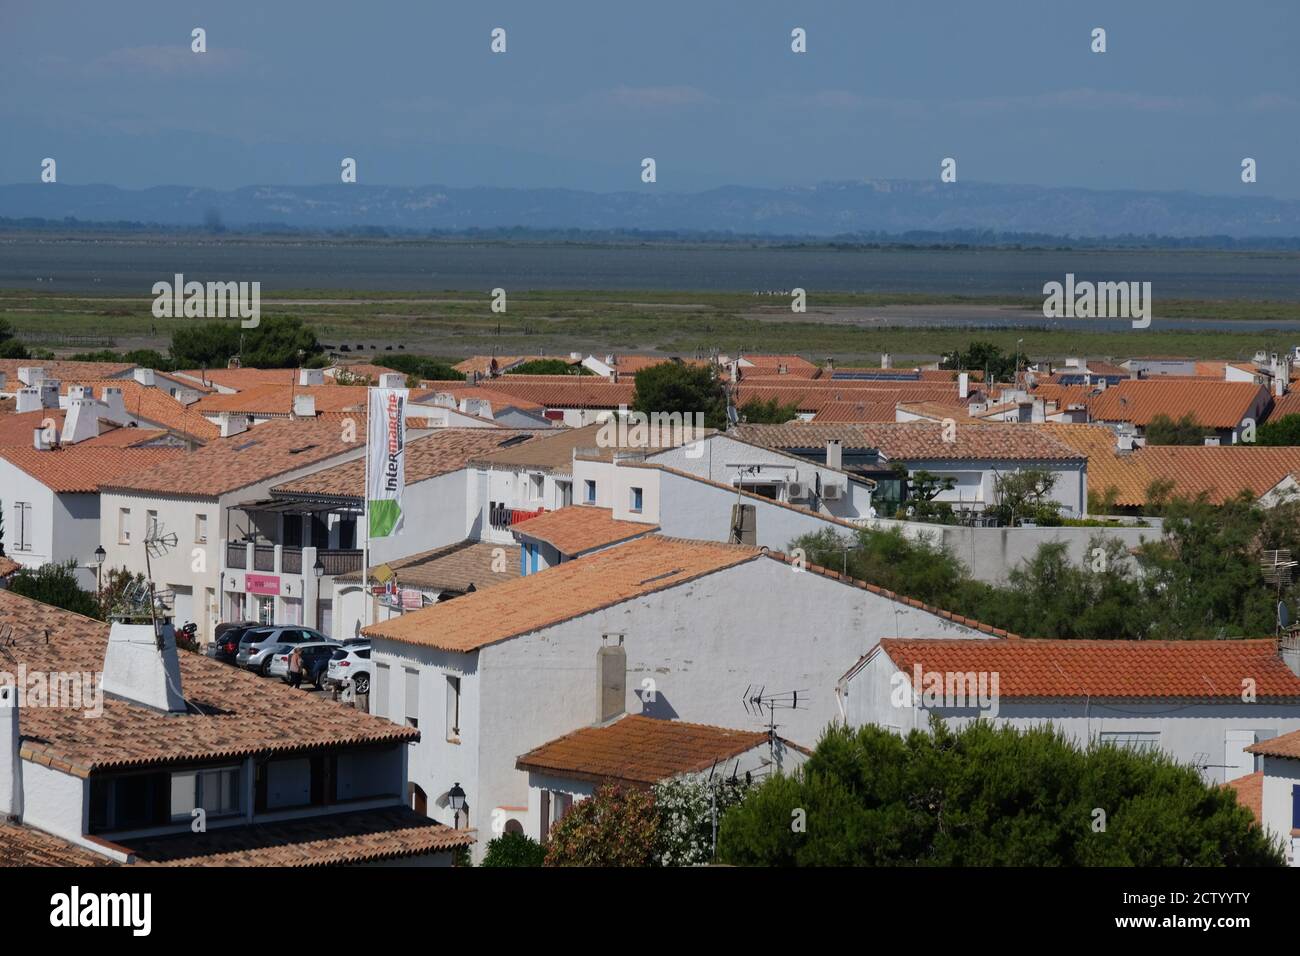 Vue sur les toits des petites maisons des Saintes Maries de la Mer, la ville principale de la Camargue en France Banque D'Images